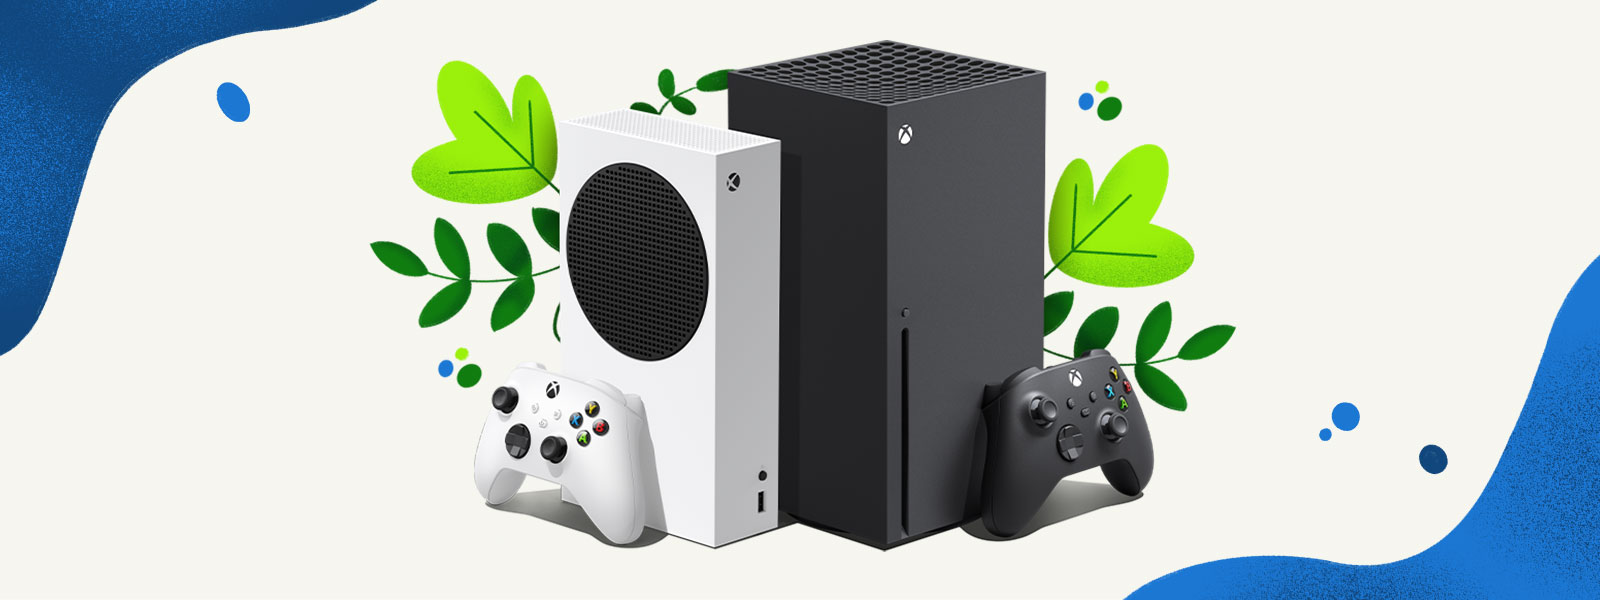 De Xbox Series X- en Xbox Series S-consoles staan naast elkaar voor een decoratieve achtergrond van planten en spatten blauw water.